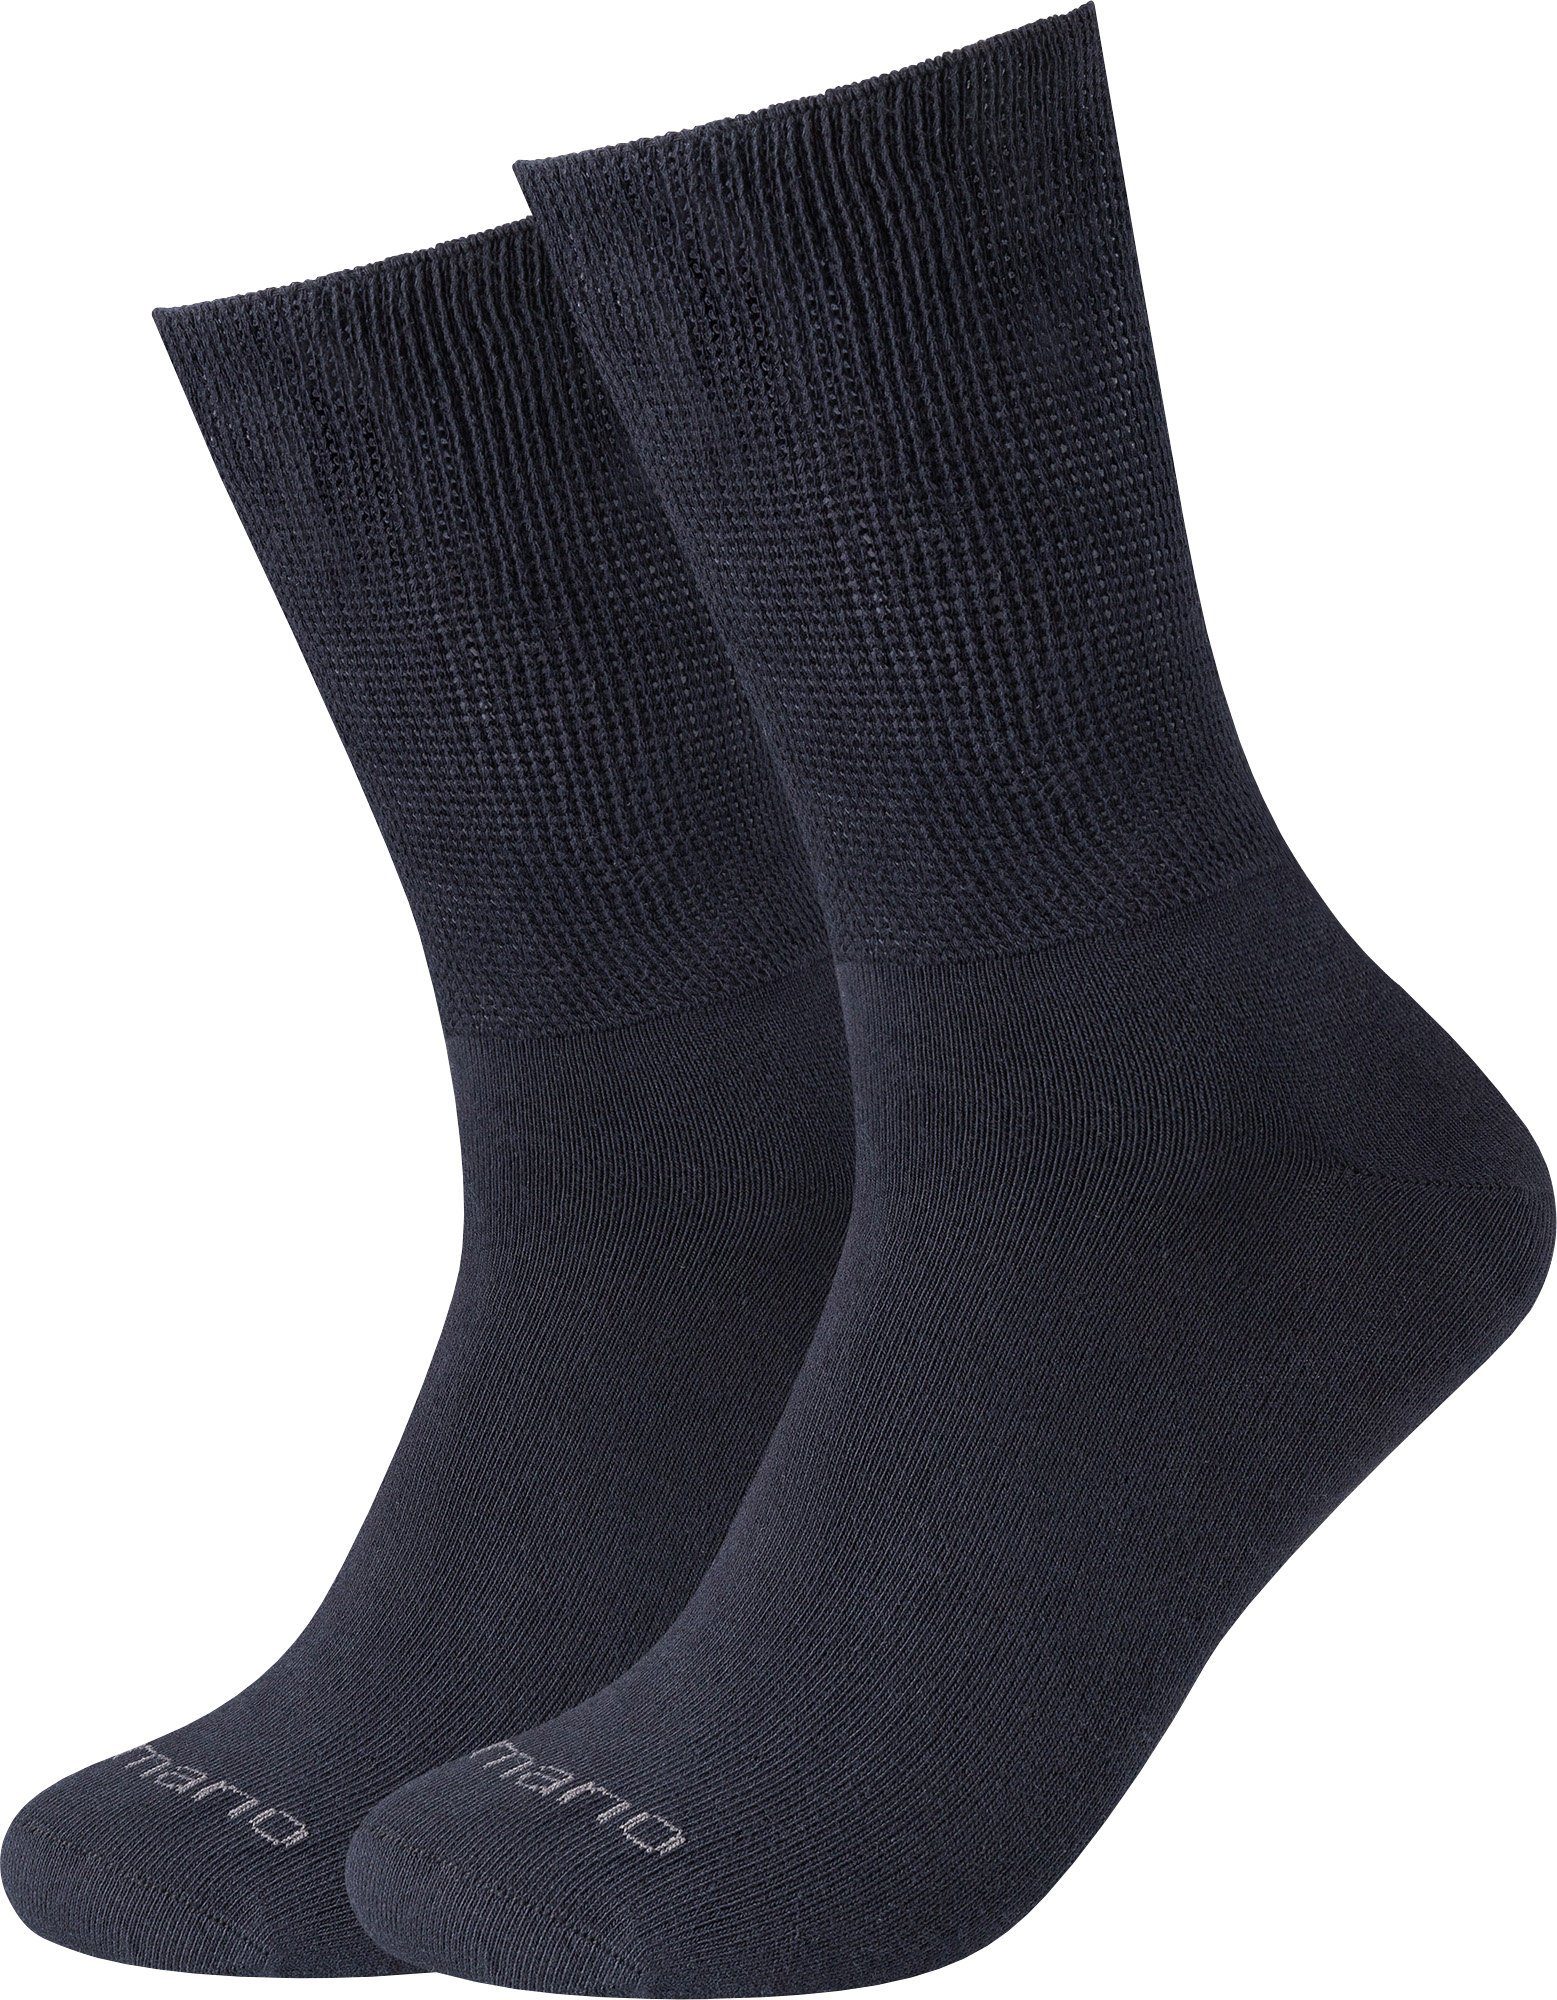 Camano Socken Unisex-Socken 2 Paar mit Softbund Uni